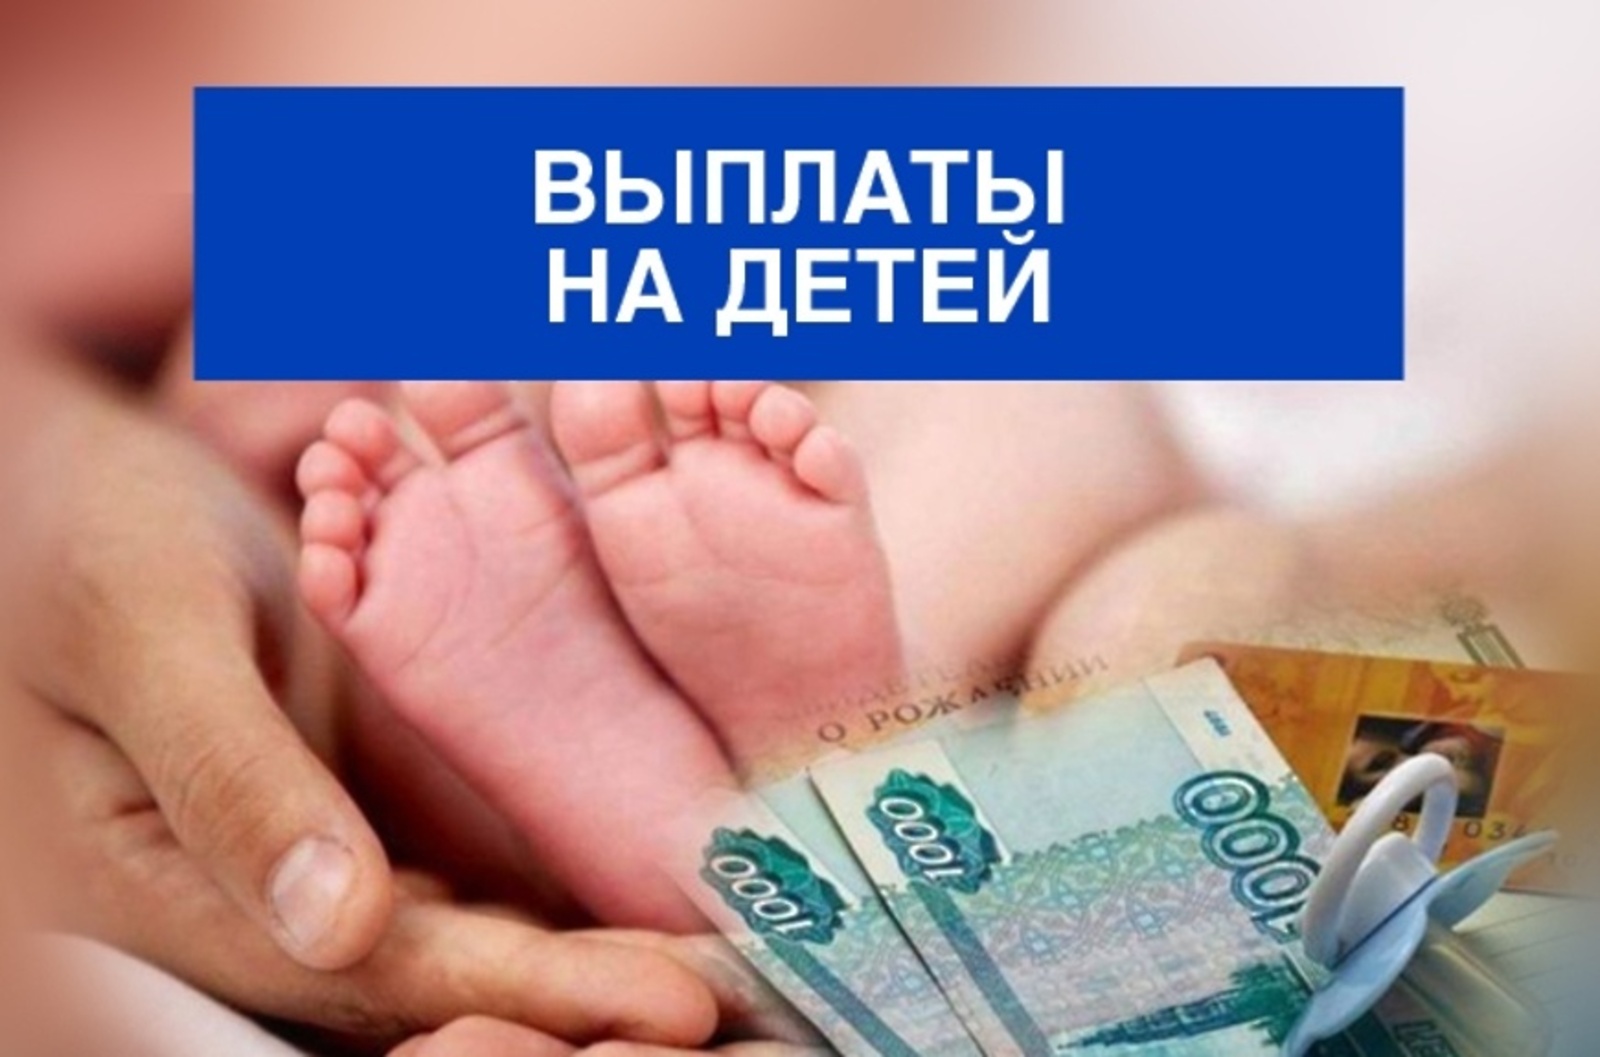 Ежемесячные выплаты на первого ребёнка производятся Социальным фондом РФ